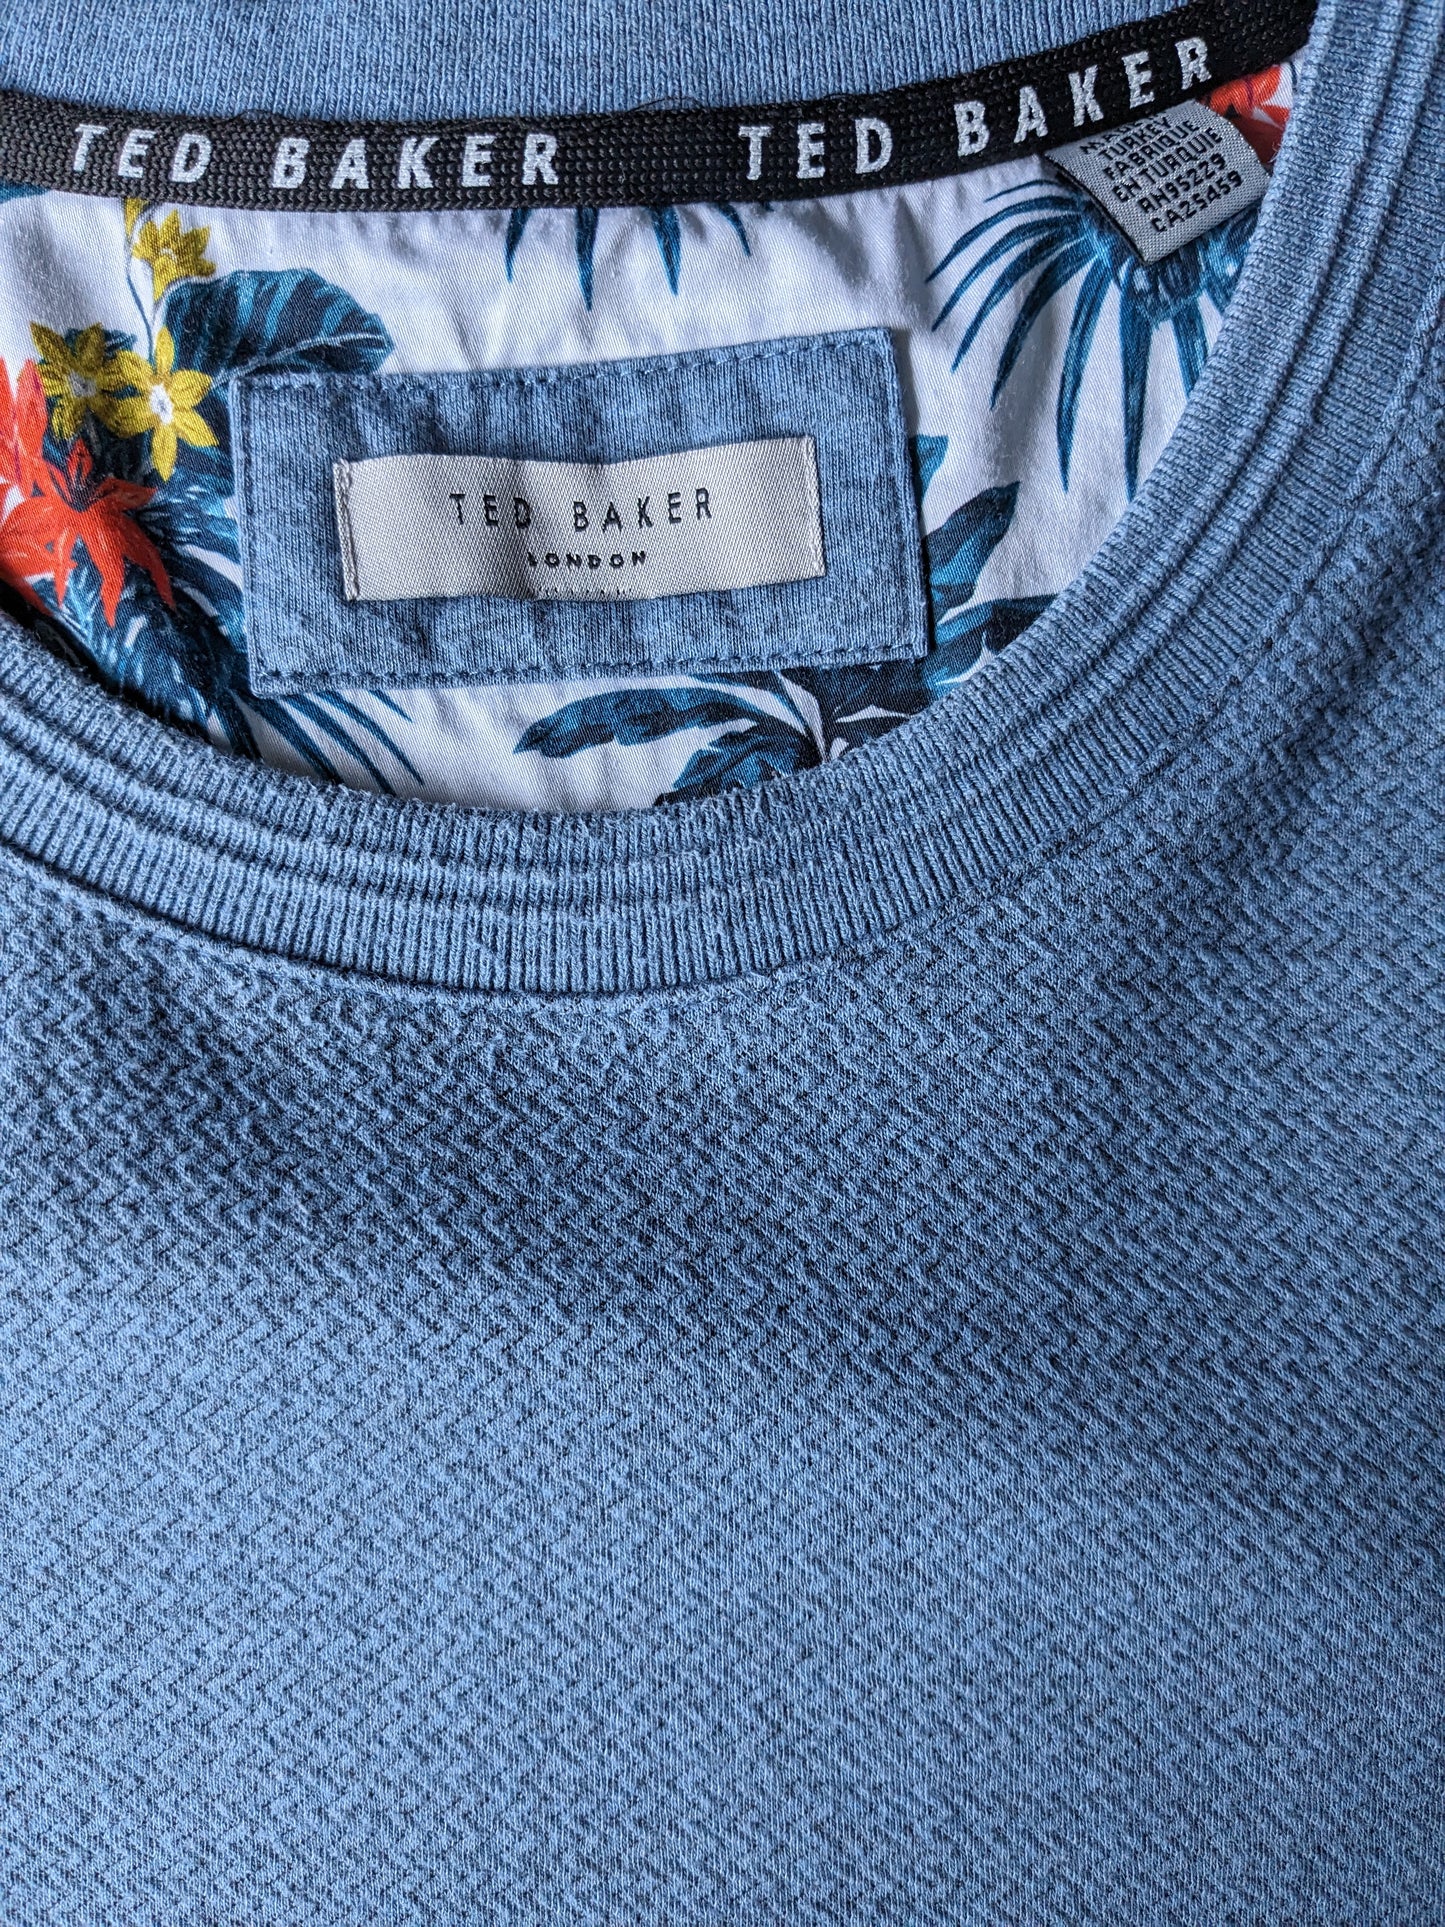 Ted Baker Casual Sweater. Motivo blu a spina di pesce. Taglia XL.